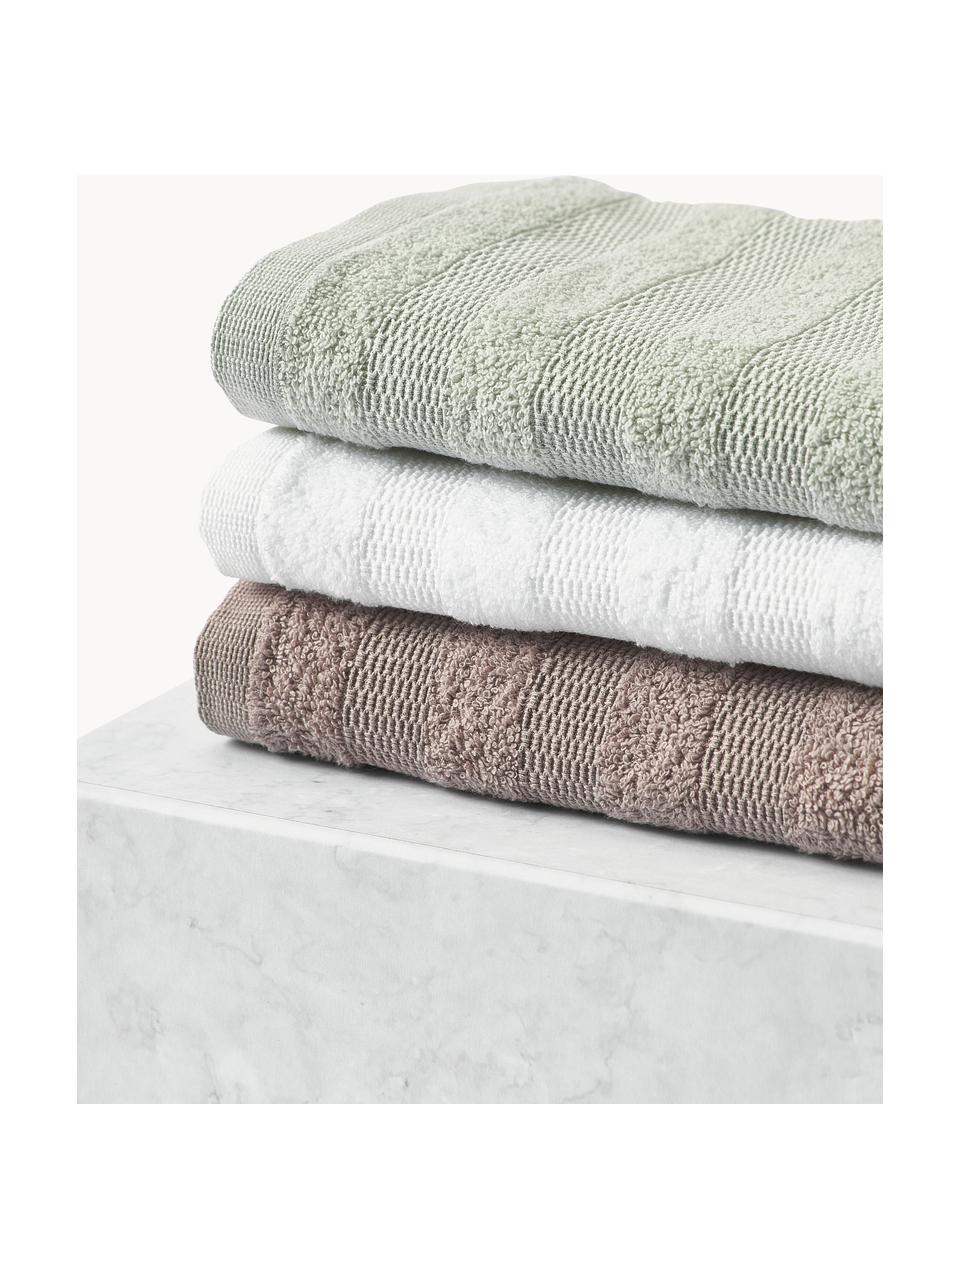 Ręcznik dla gości z bawełny Camila, 4 szt., Mauve, Ręcznik dla gości, S 30 x D 50 cm